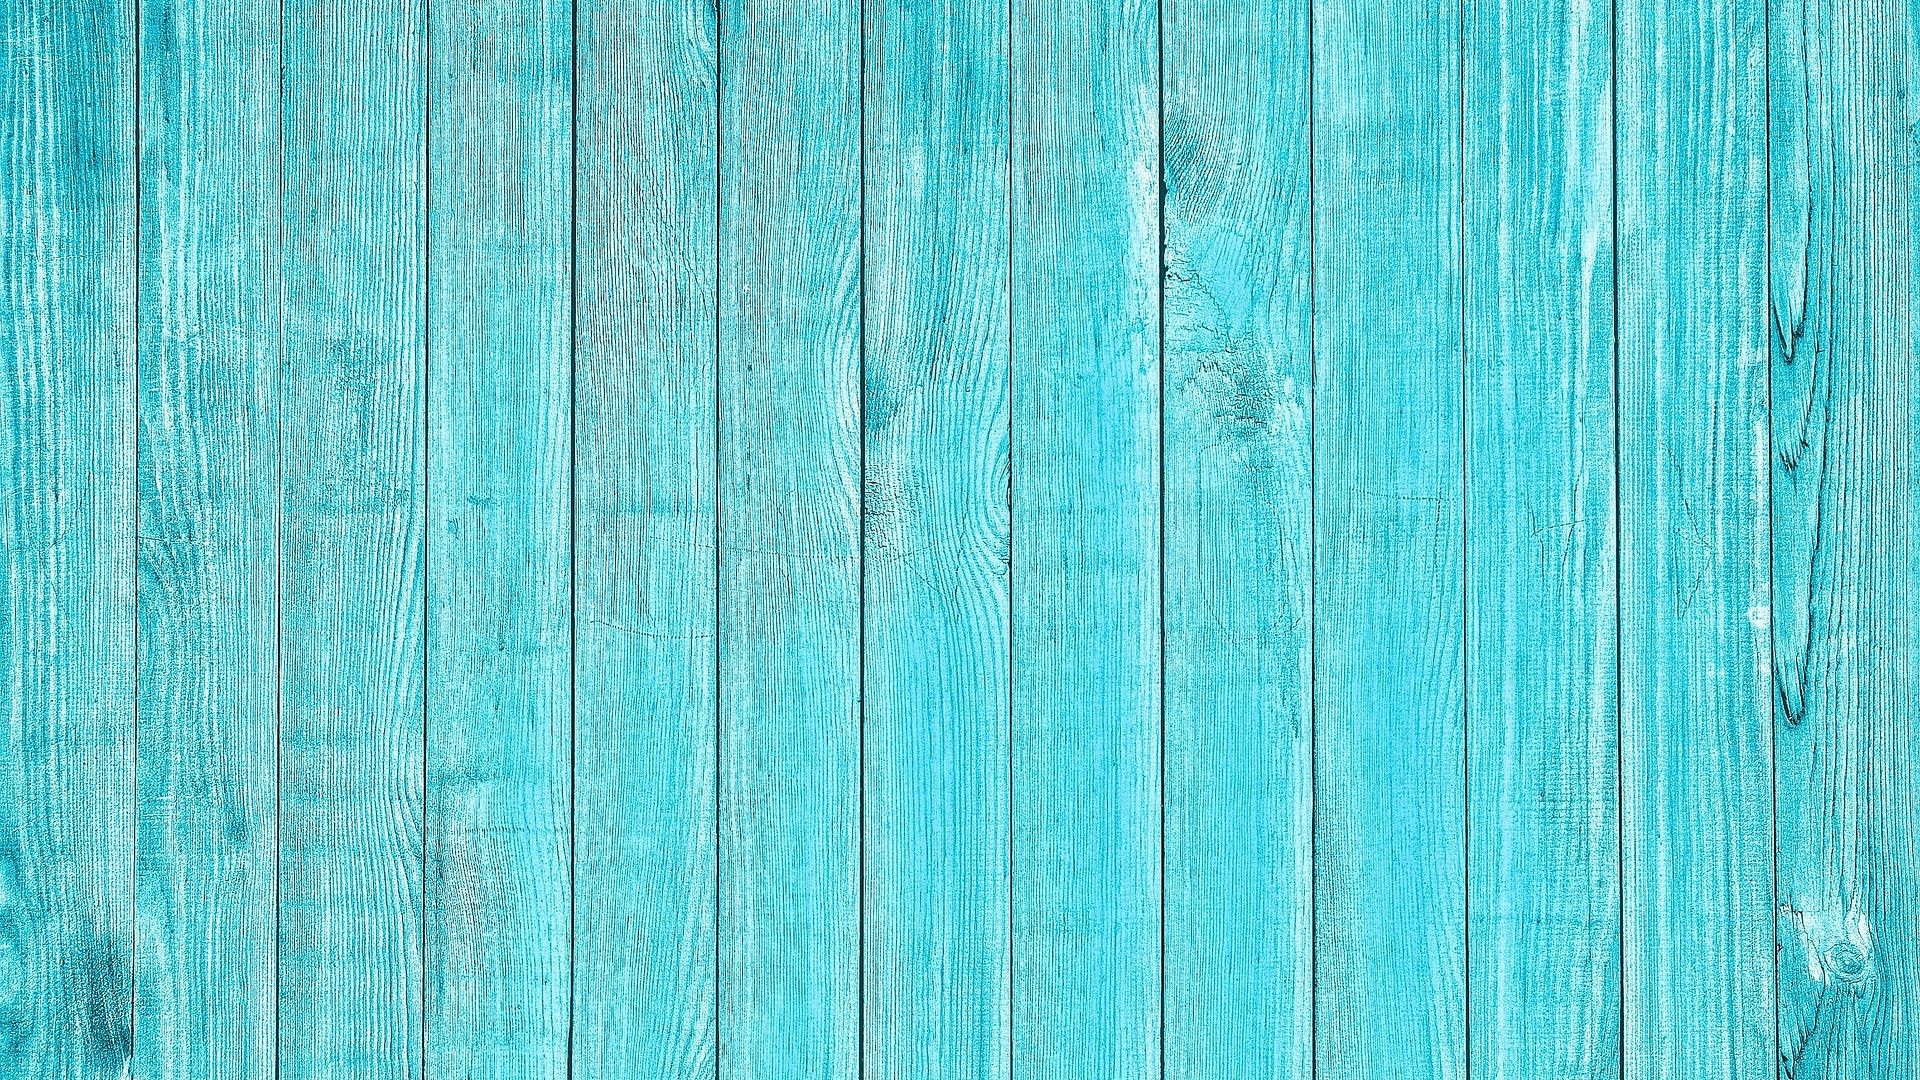 1920x1080 Wooden Wall Light Blue Wallpaper